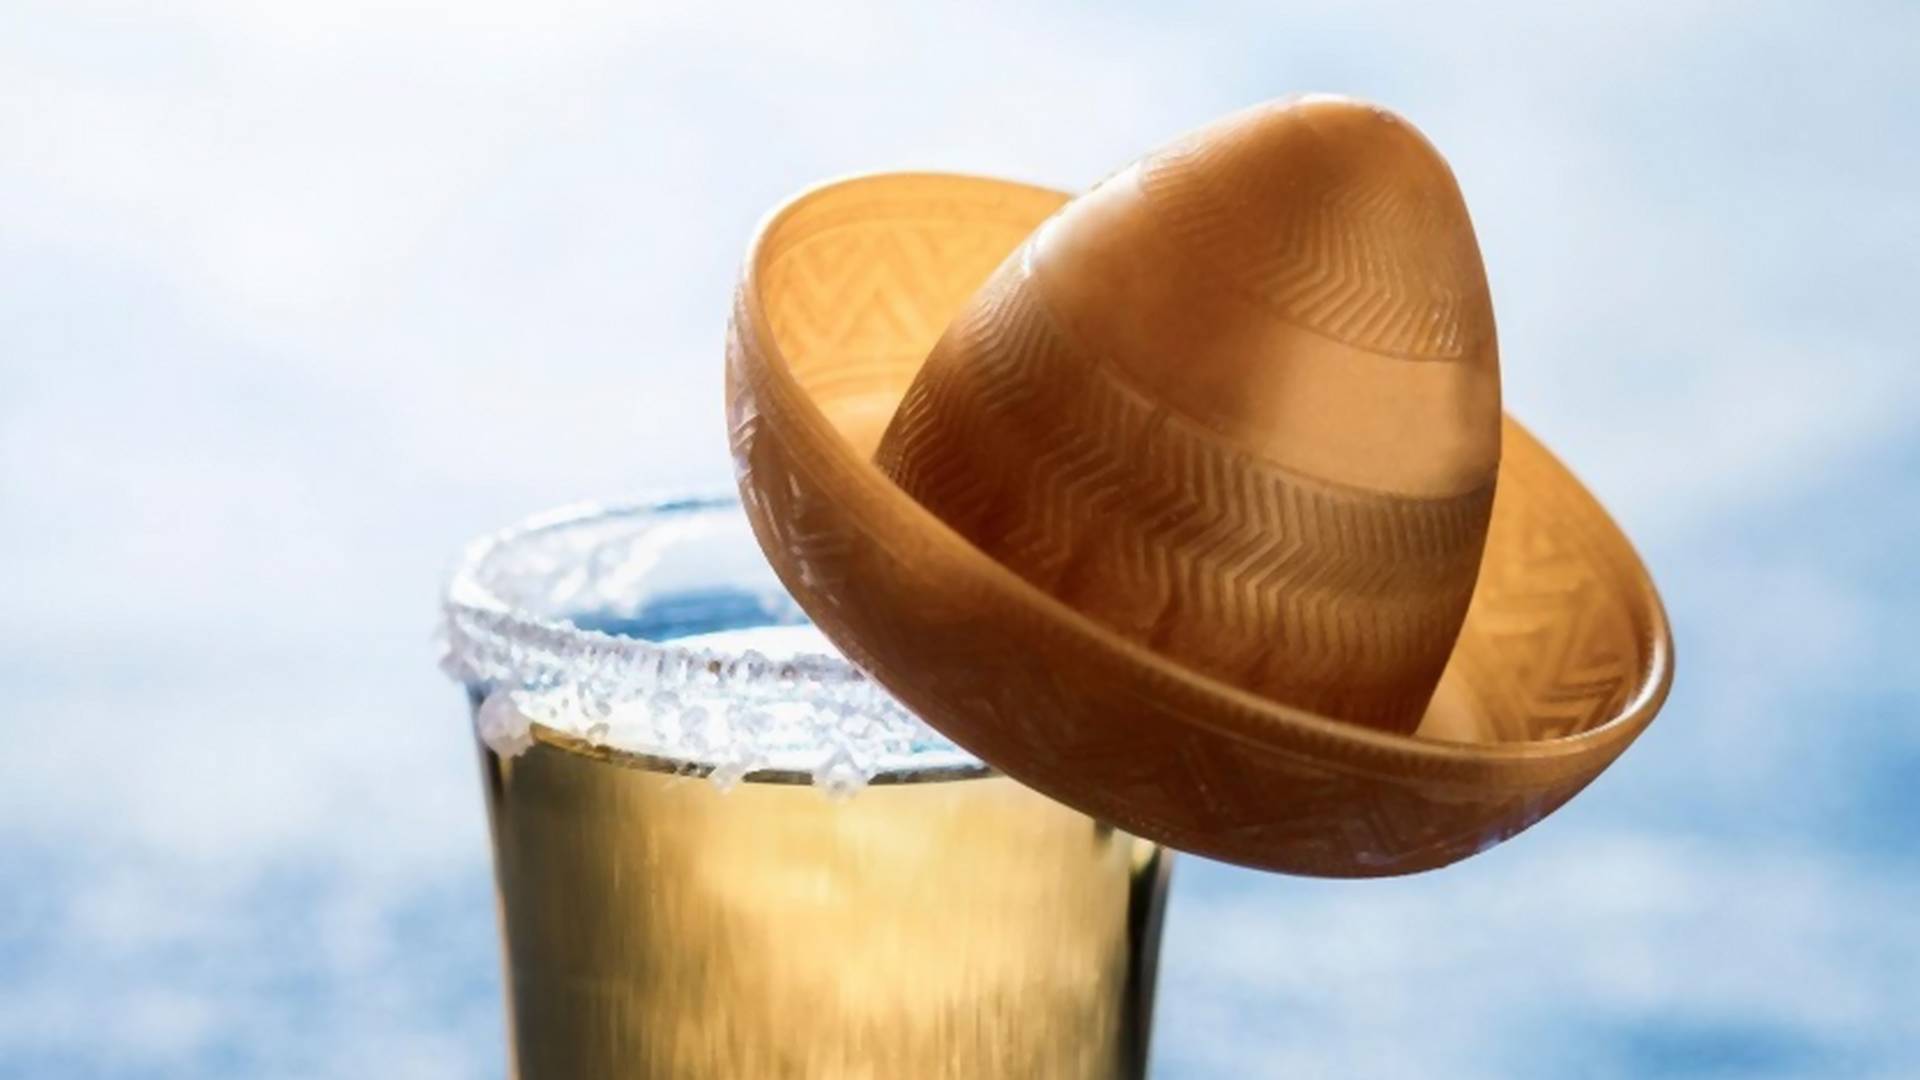 Zašto smo tek sada saznali čemu služi sombrero na flaši tekile?